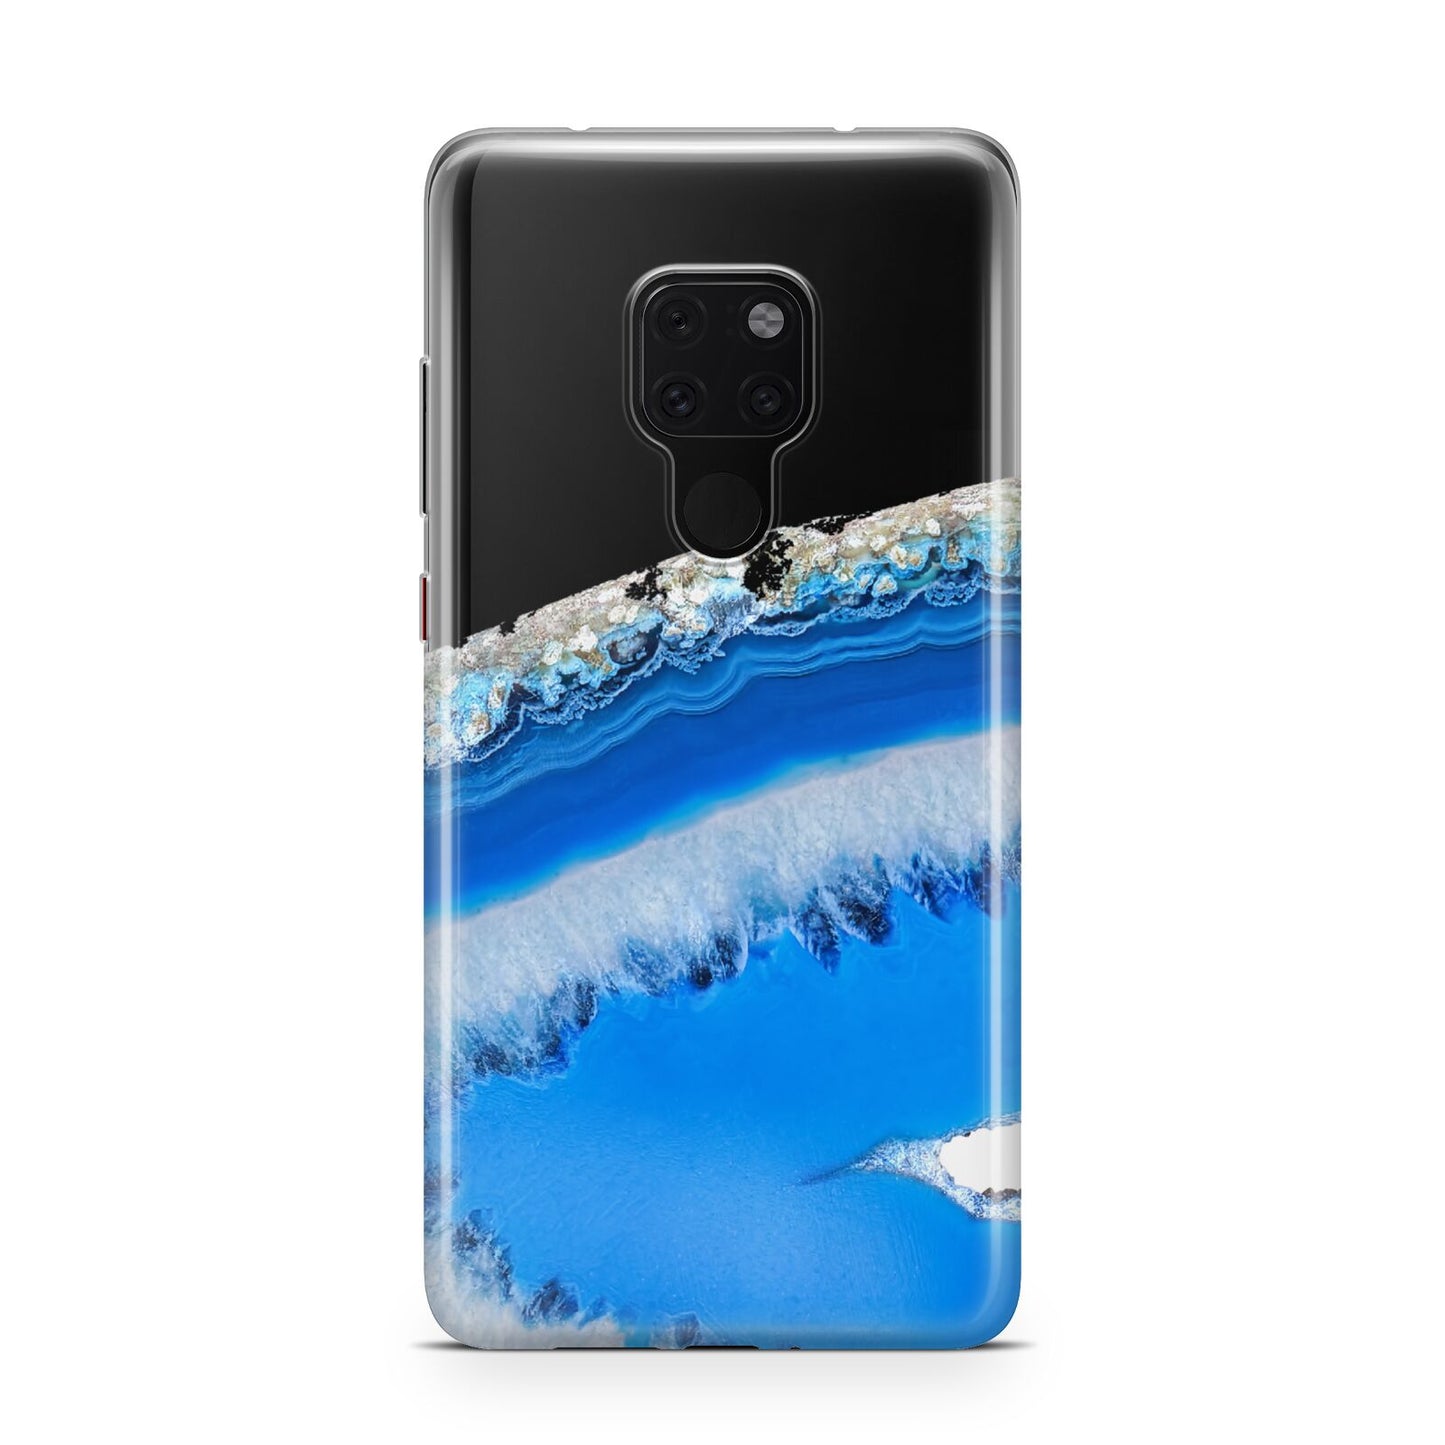 Agate Blue Huawei Mate 20 Phone Case